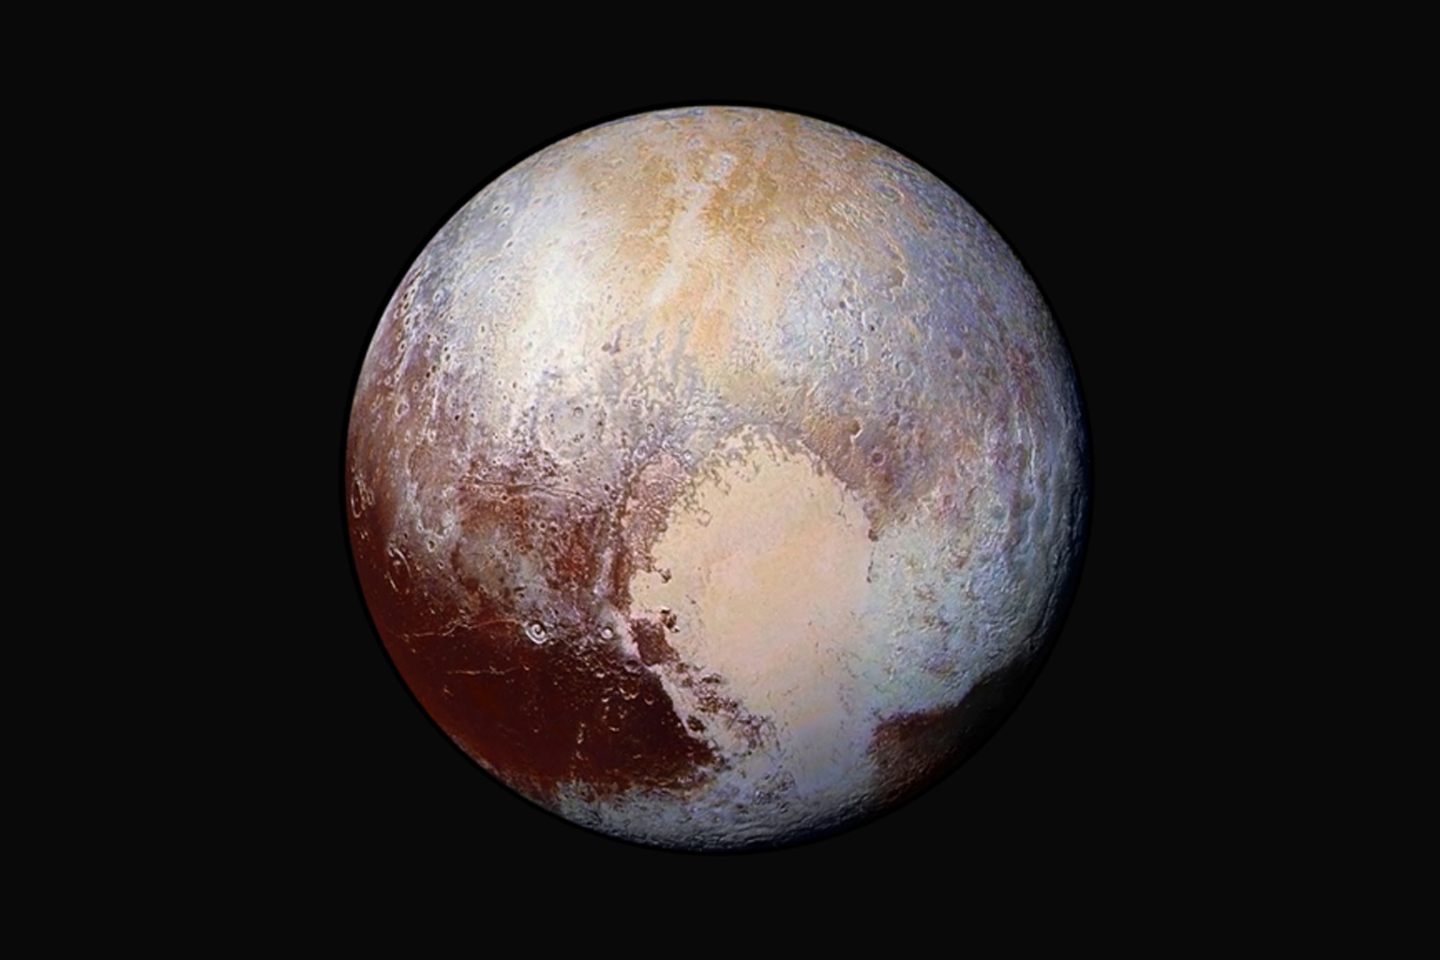 Четыре изображения из дальномерного разведывательного устройства New Horizons (LORRI) были объединены с данными о цвете с помощью инструмента Ralph, чтобы создать этот улучшенный глобальный вид цвета Плутона.